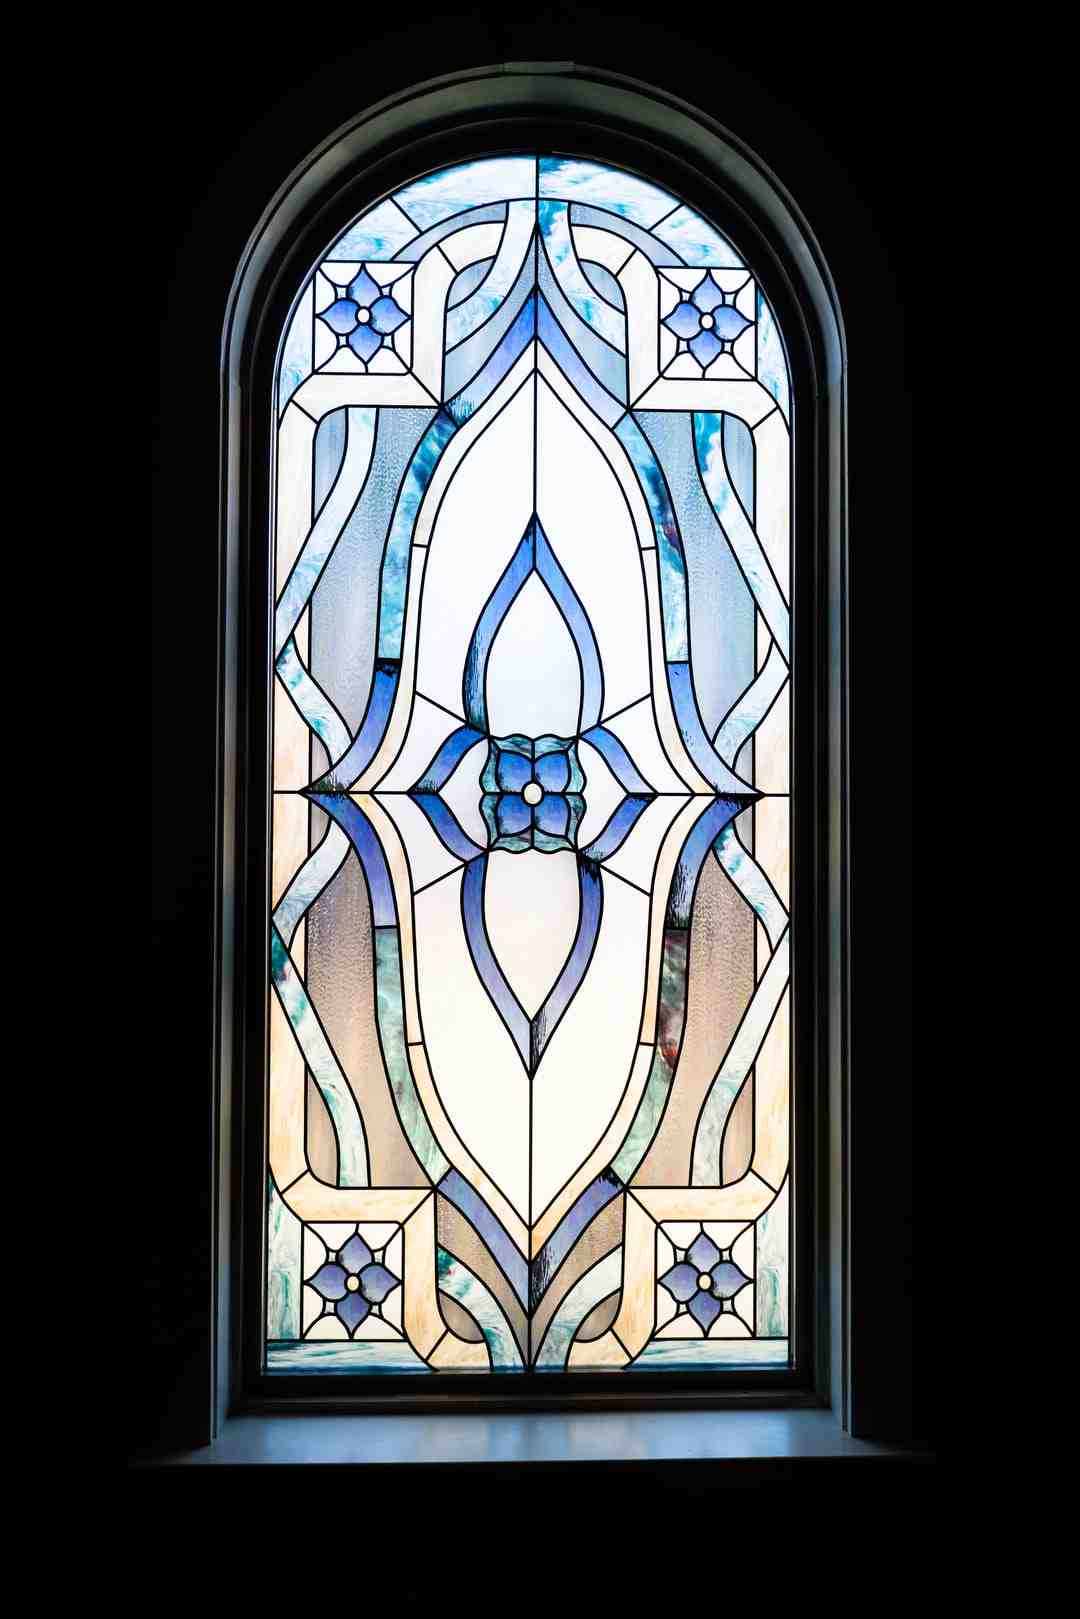 Comment photographier des vitraux d'église ?